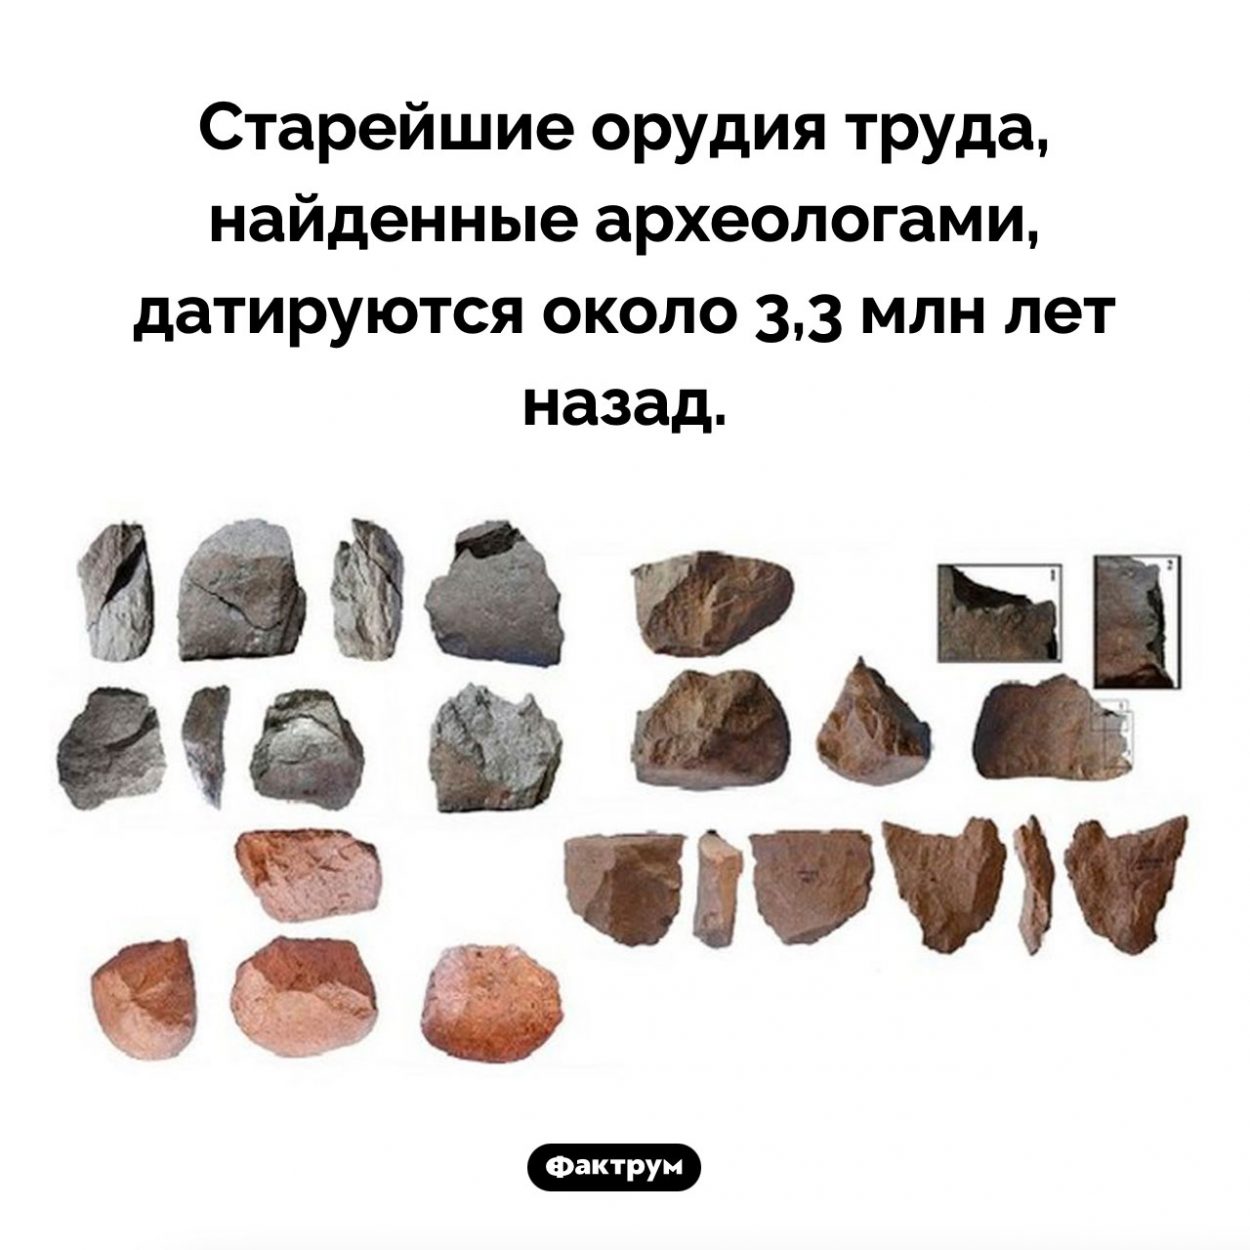 Старейшие орудия труда. Старейшие орудия труда, найденные археологами, датируются около 3,3 млн лет назад.